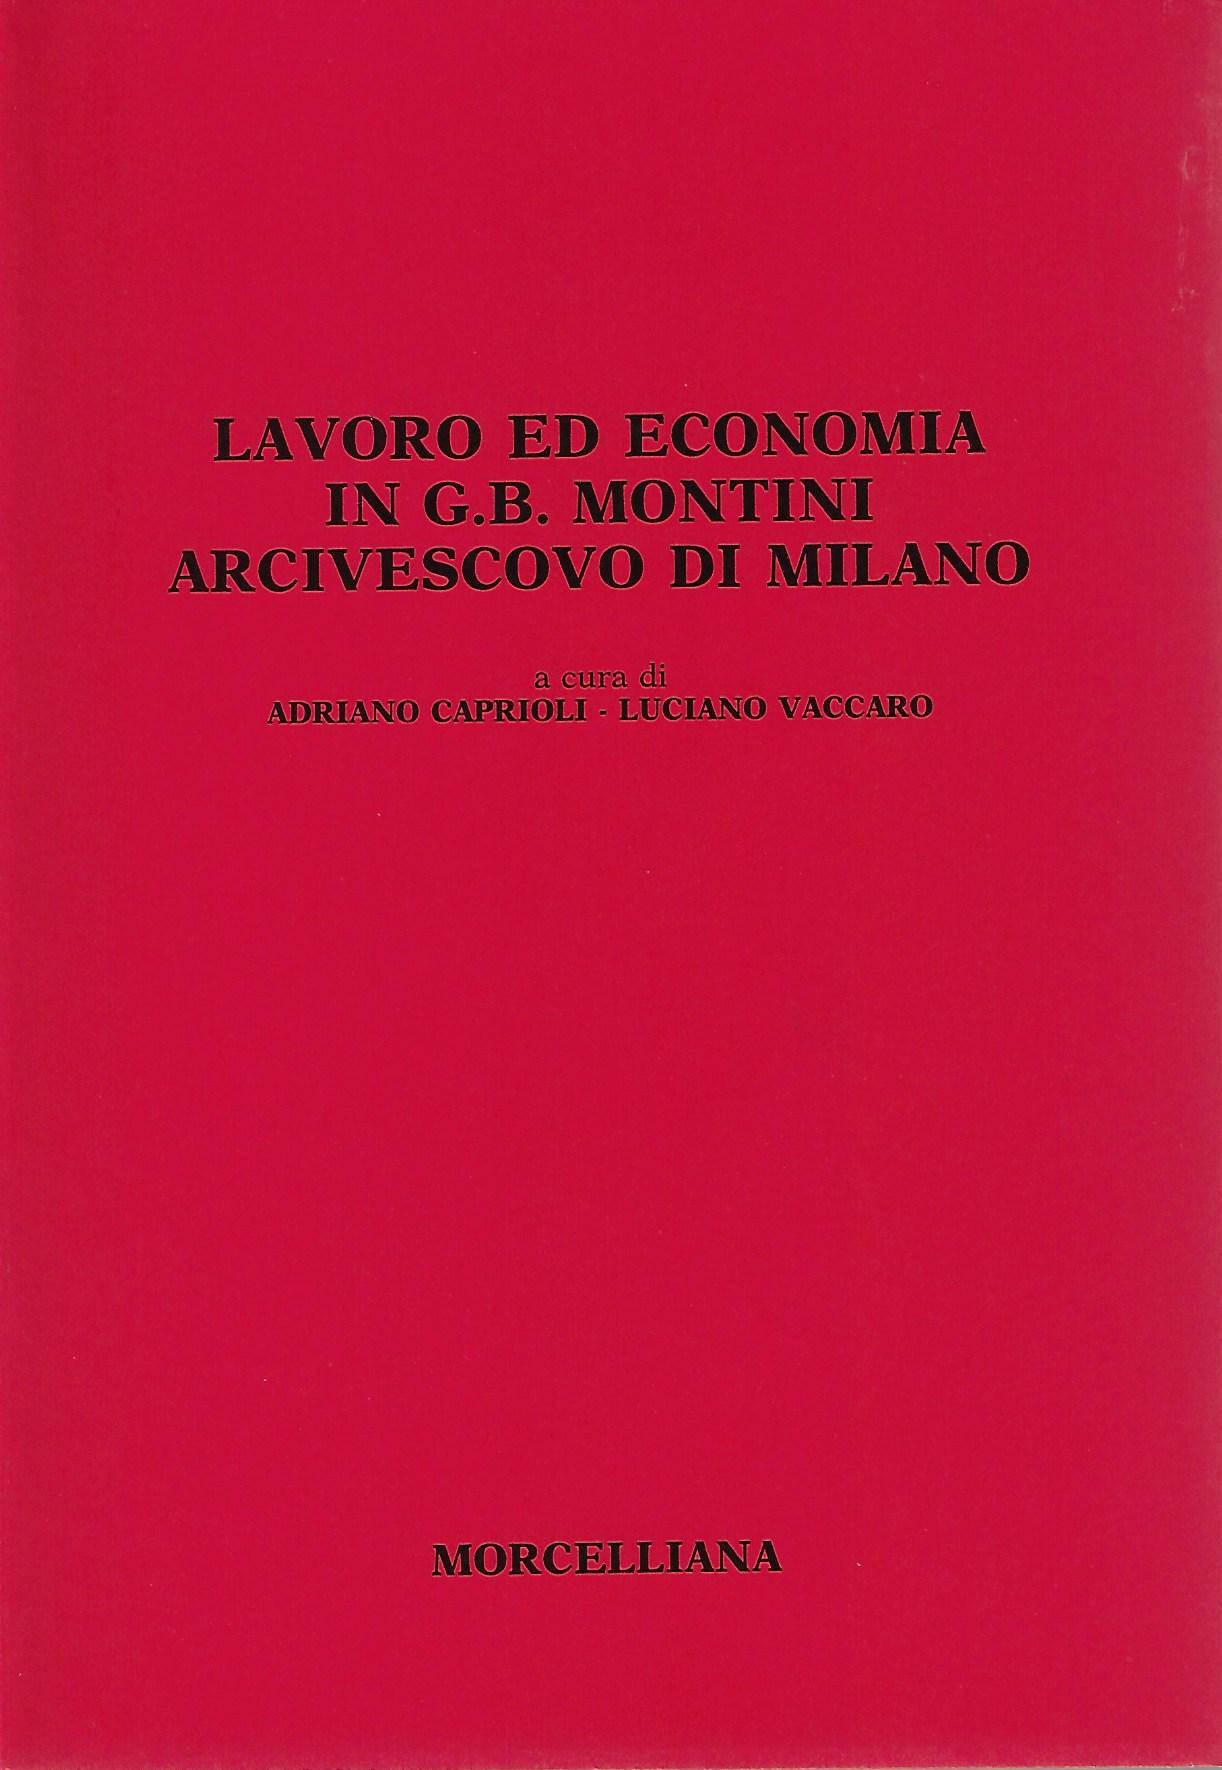 Lavoro ed economia in G.B. Montini arcivescovo di Milano